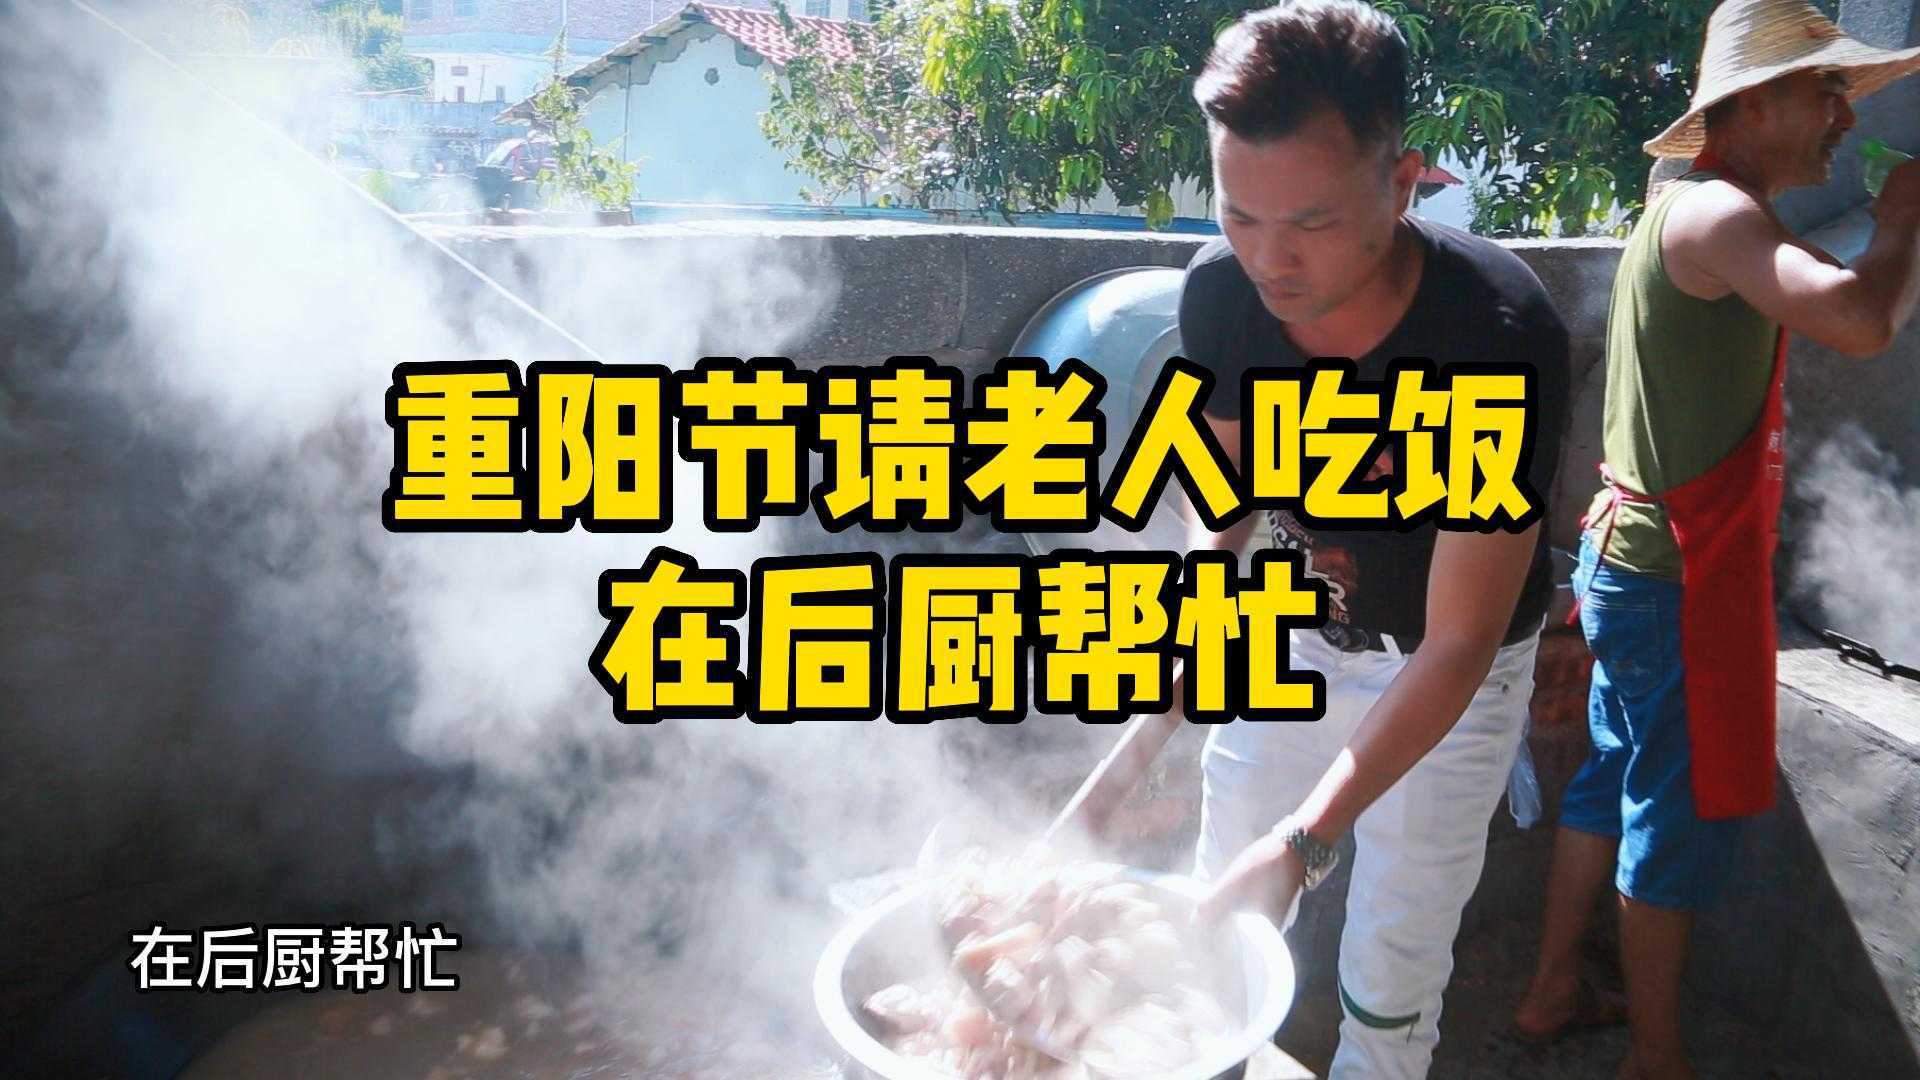 7《重阳节敬老活动》阿兴在后厨帮忙2022年10月3日